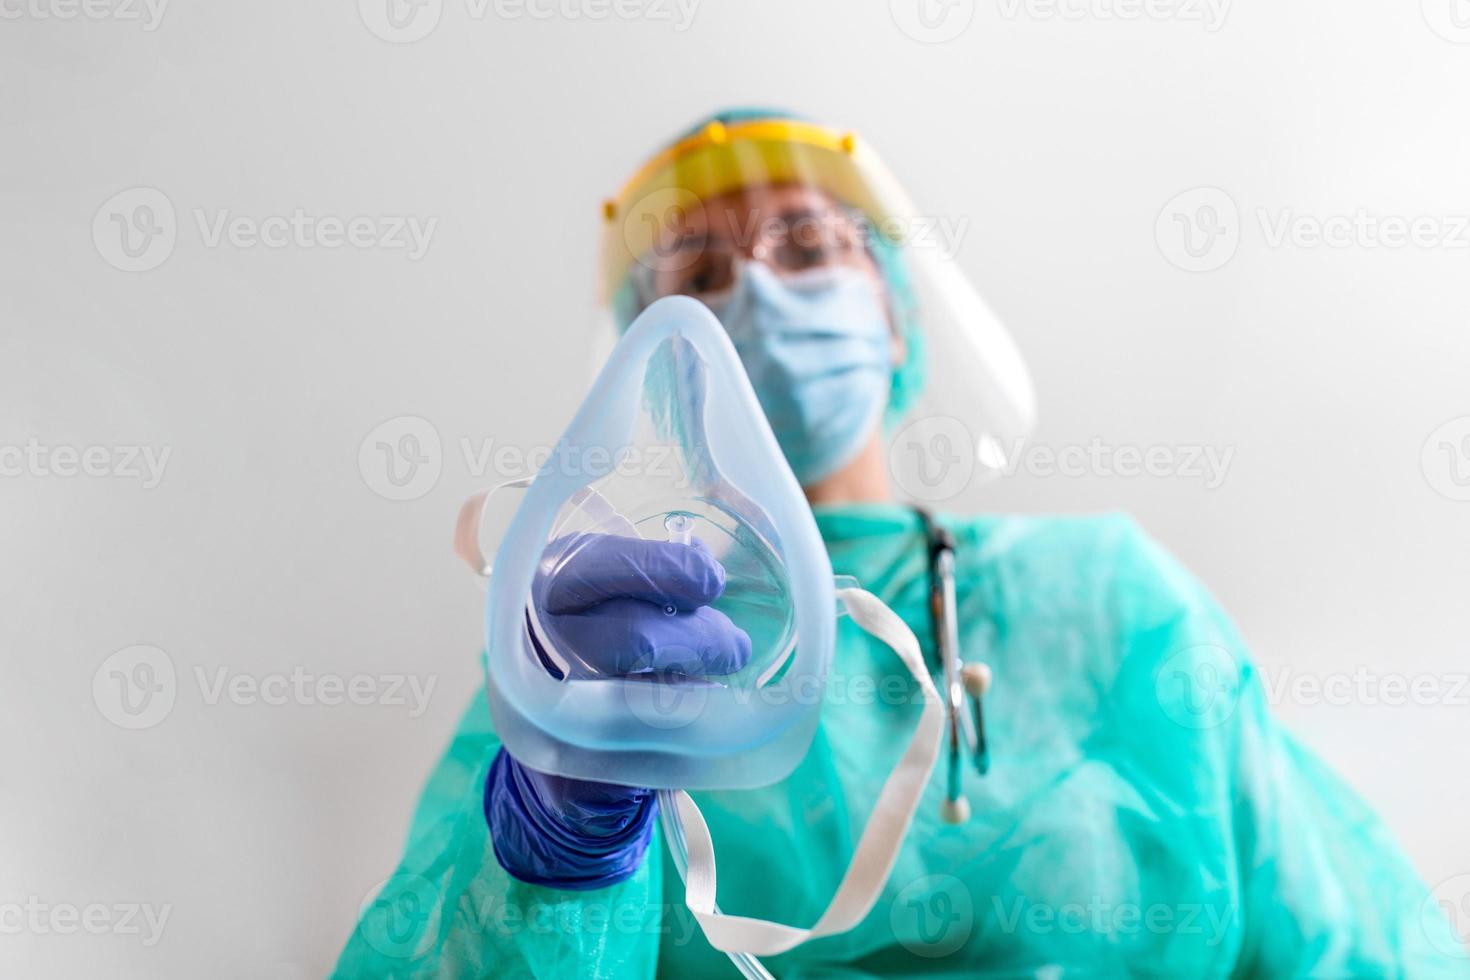 mulher médica segura máscara de oxigênio para inalar paciente com problema respiratório, coronavírus ou pulmões de ataque covid-19. profissional de saúde em equipamento de proteção colocado em diagnóstico de paciente de máscara de oxigênio de coronavírus foto